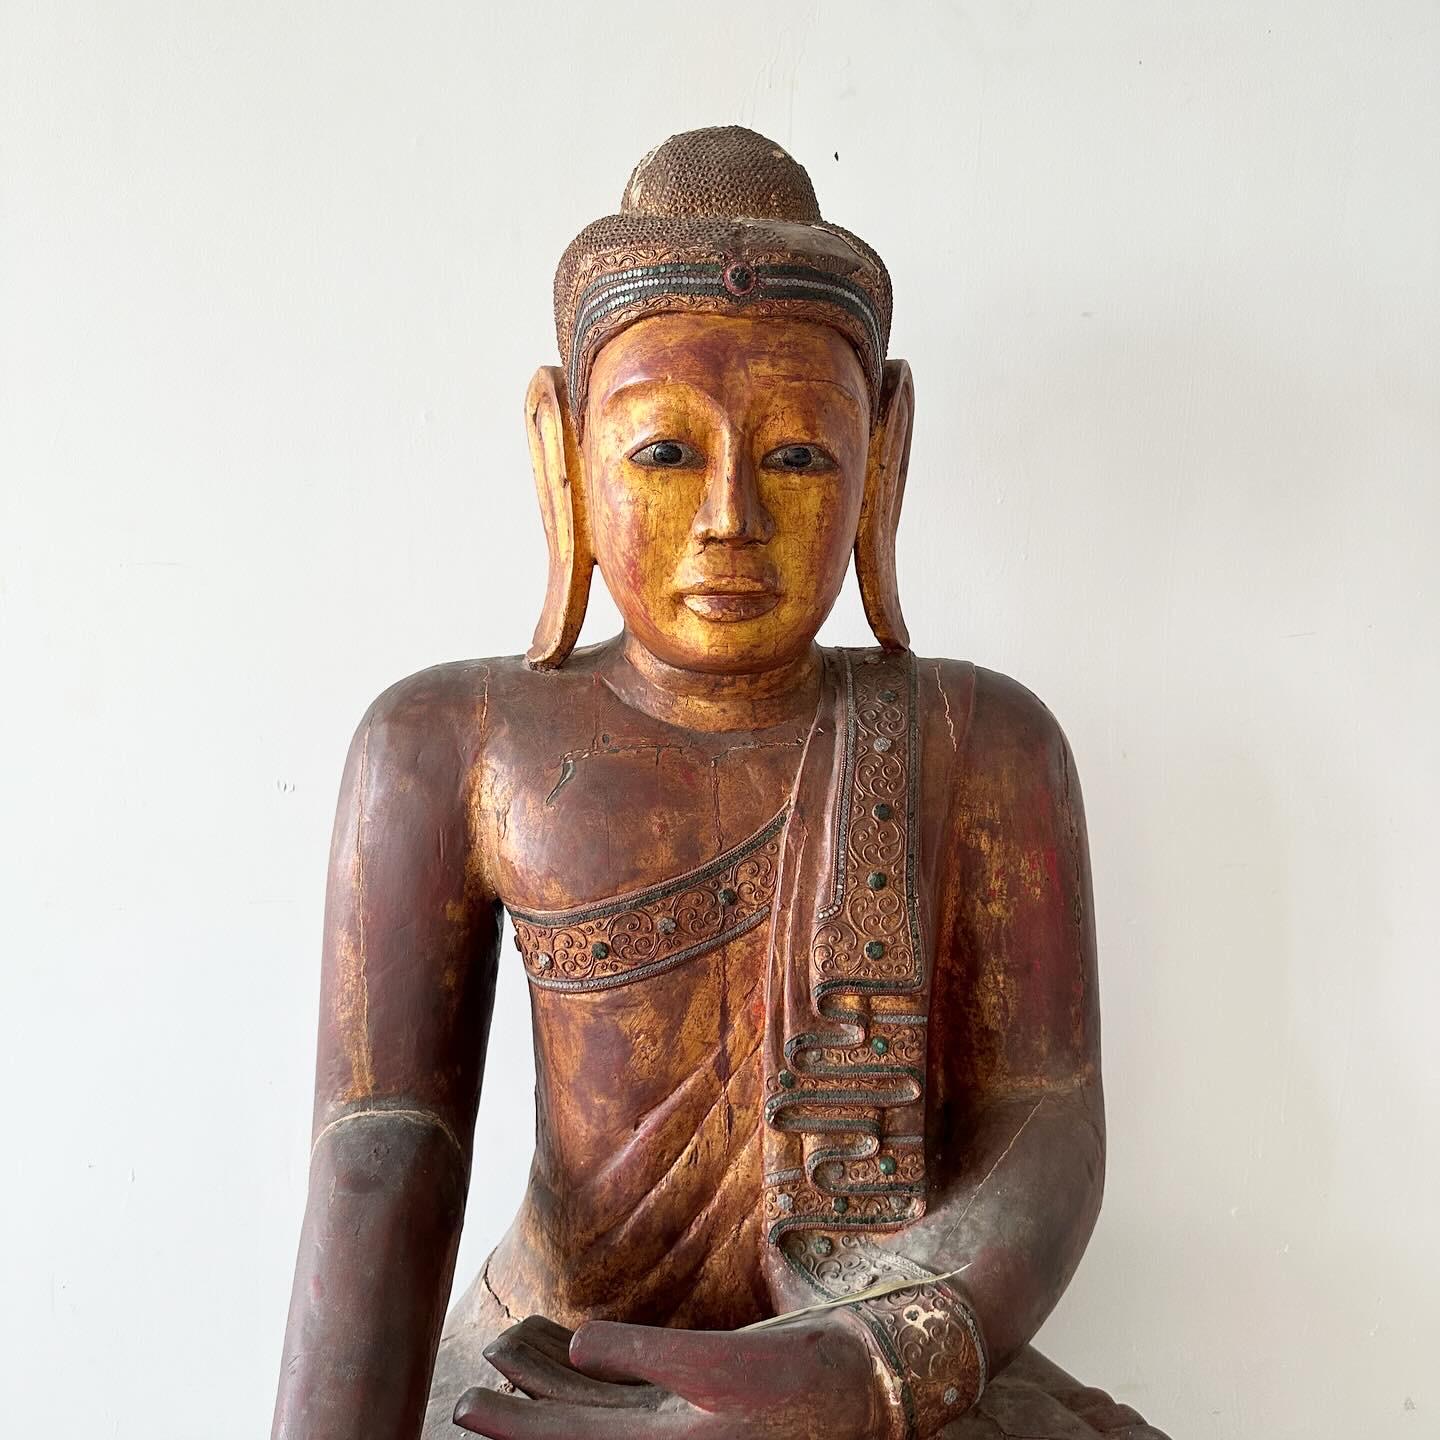 Überlebensgroße, exquisite südostasiatische Buddha-Statue aus Holz in Bhumisparsha-Mudra-Pose. Die Figur ist aus massivem Holz, rot bemalt mit vergoldeten Highlights. 

Bhumisparsha bedeutet übersetzt 